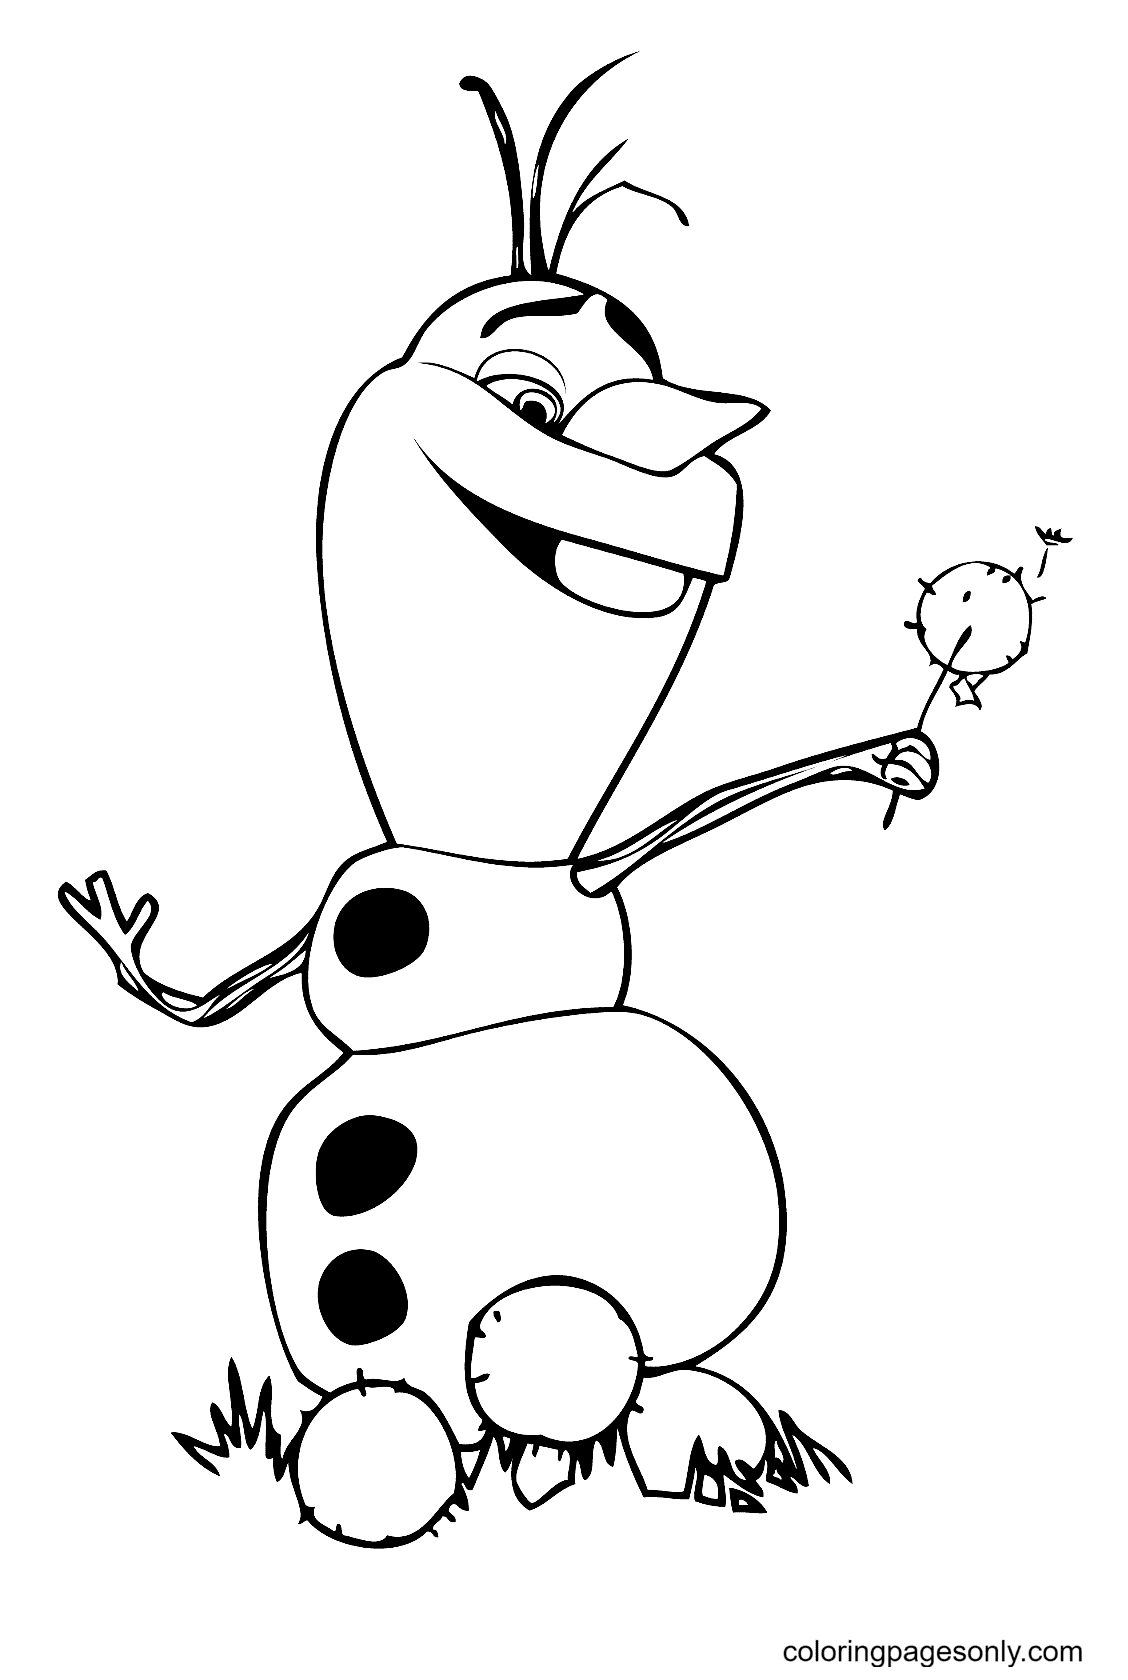 Olaf Sneeuwman uit Frozen van Olaf